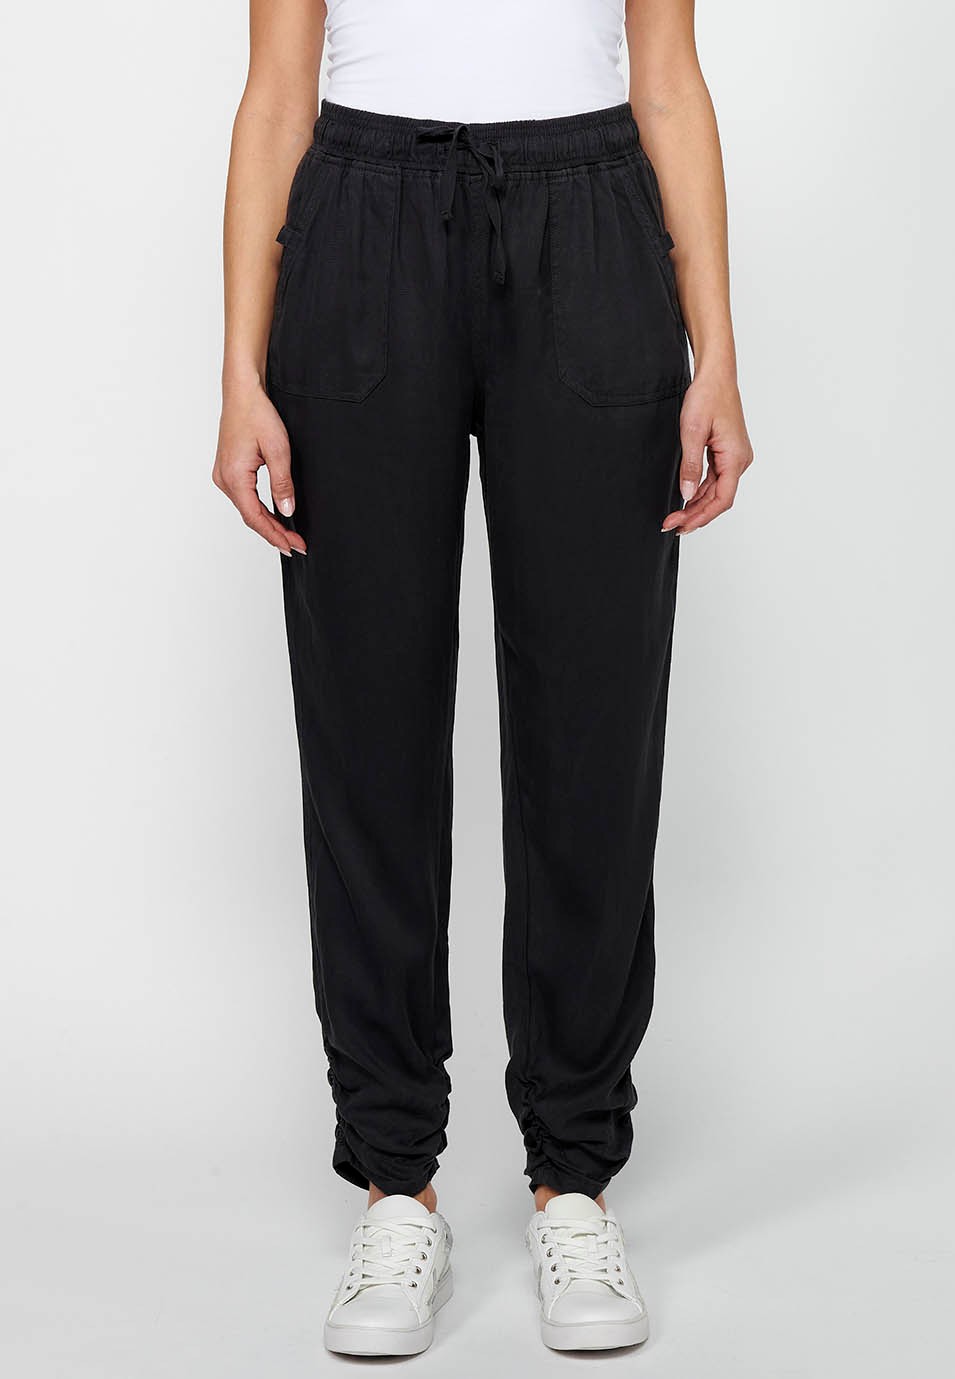 Pantalón largo jogger con Acabado rizado y Cintura engomada con Cuatro bolsillos, dos traseros con solapa de Color Negro para Mujer 4